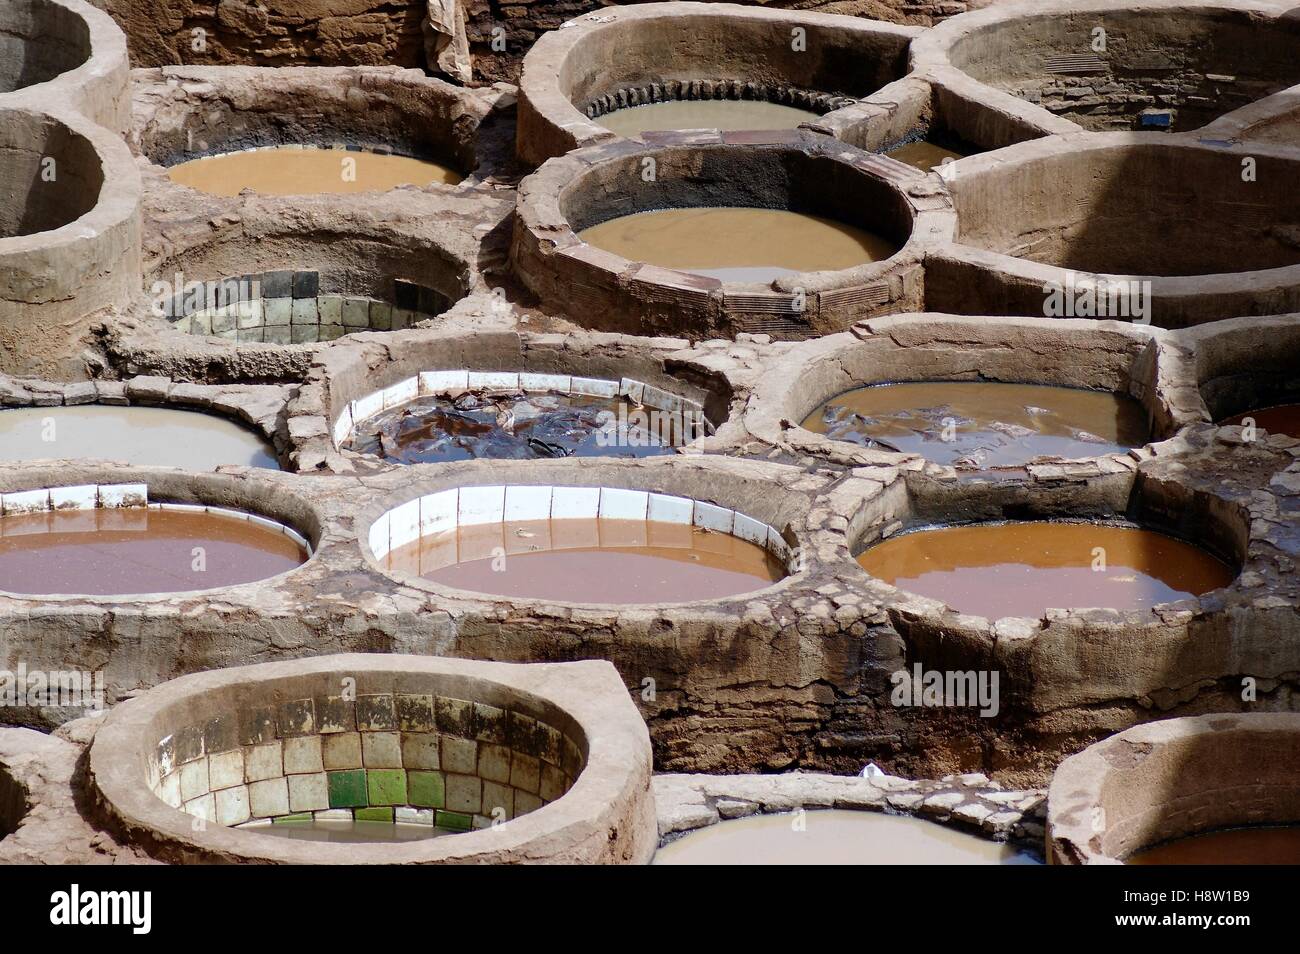 La storica conceria in pelle Chouara, conosciuta anche come Chouwara, a Fez, in Marocco, utilizza tini da esterno in pietra rotonda per tingere i tessuti. Foto Stock